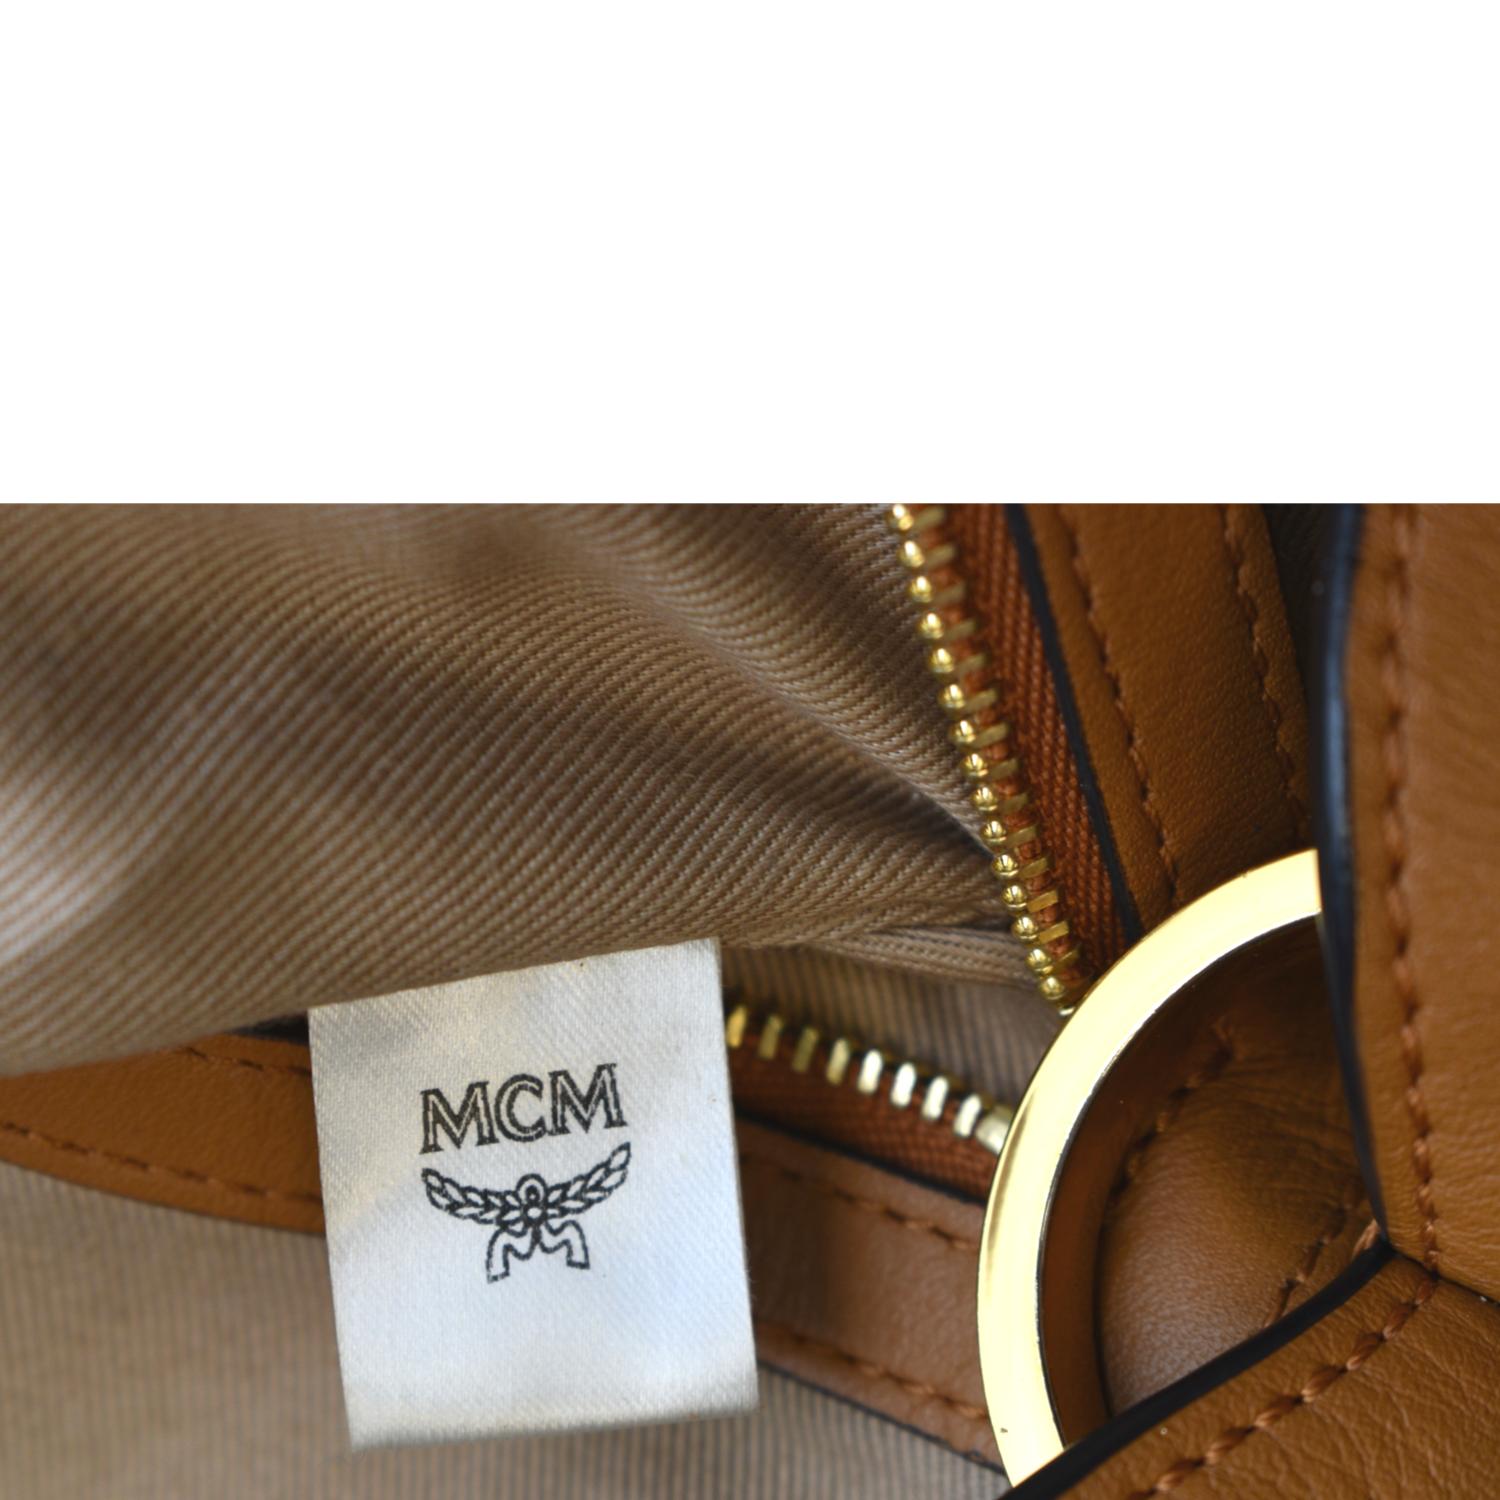 Mcm Bags Made In Korea